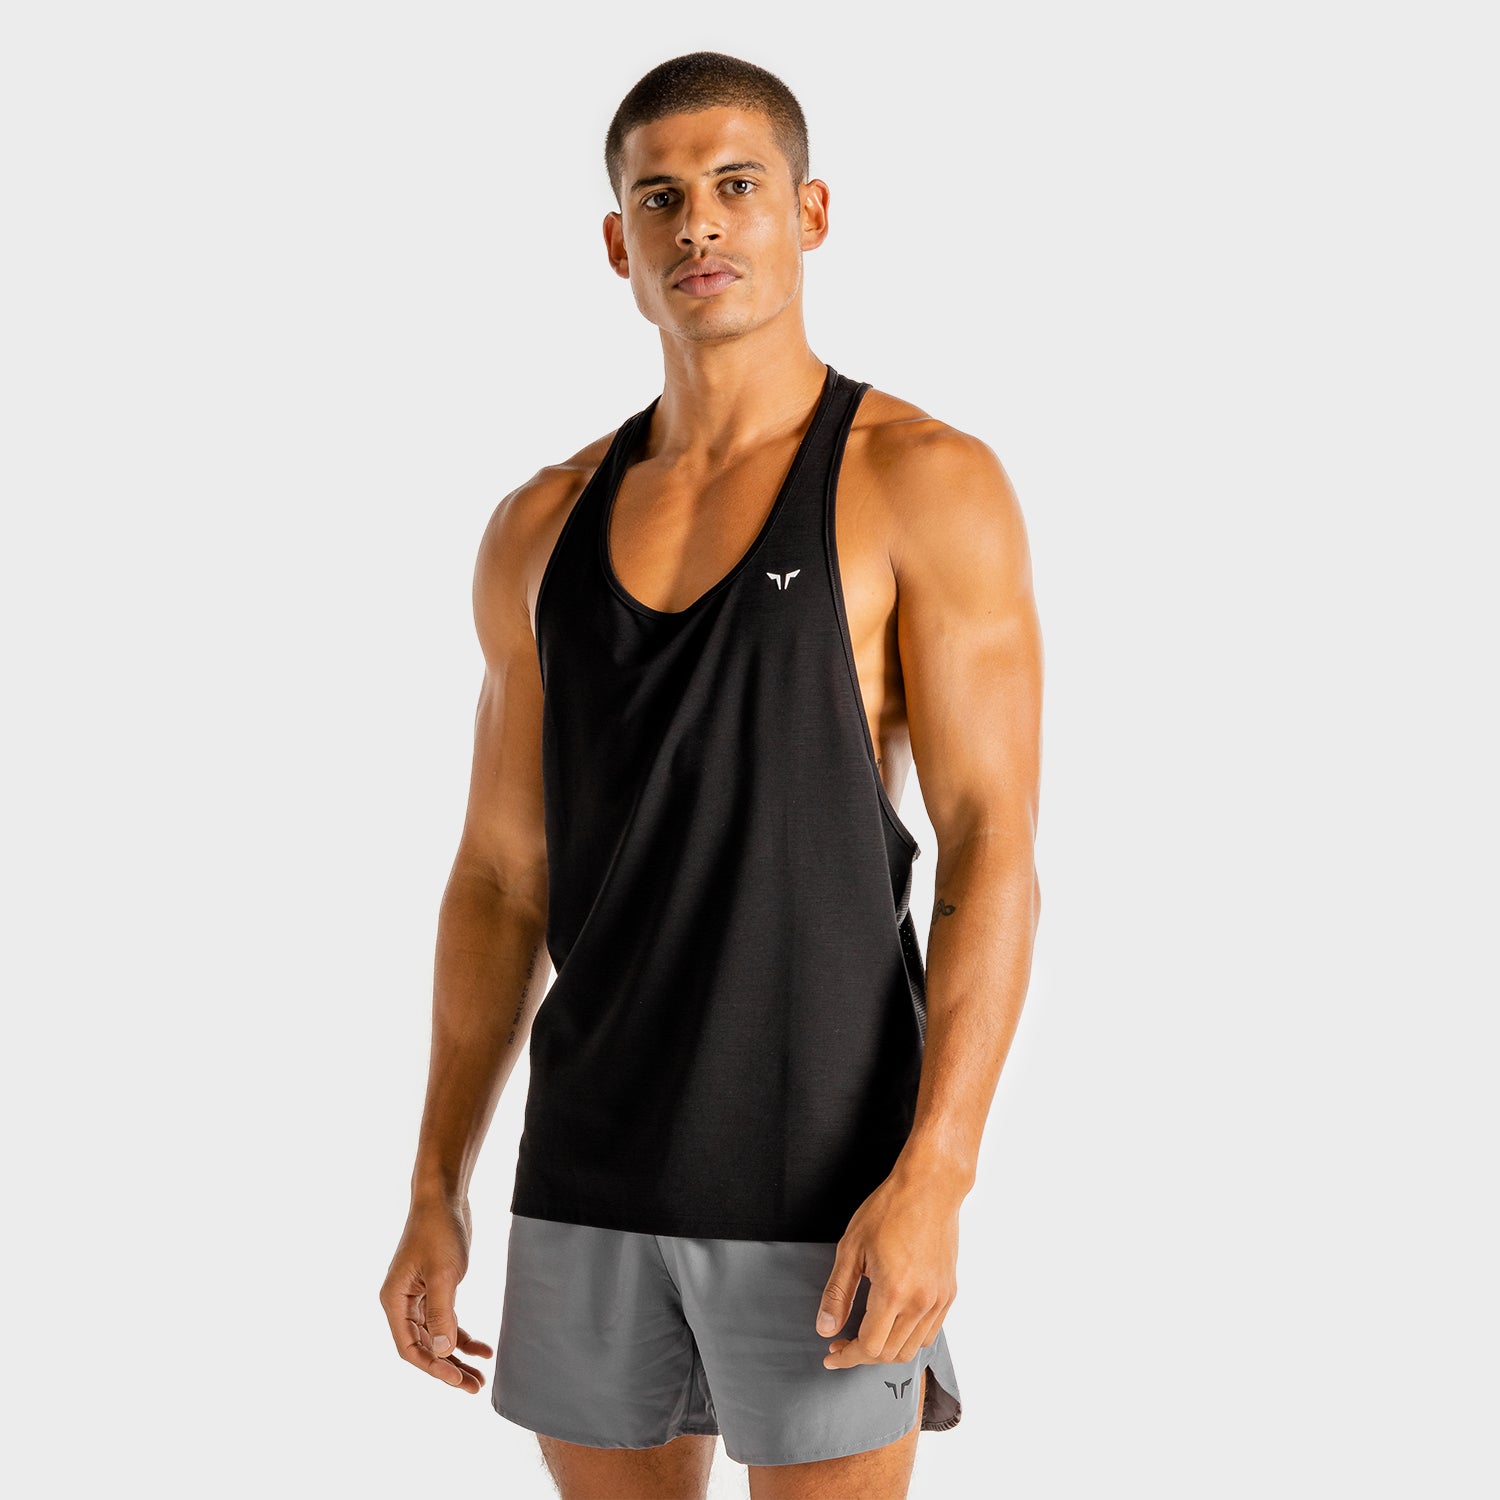 SQUATWOLF-gym-wear-core-stringer-black-stringer-vests-for-men